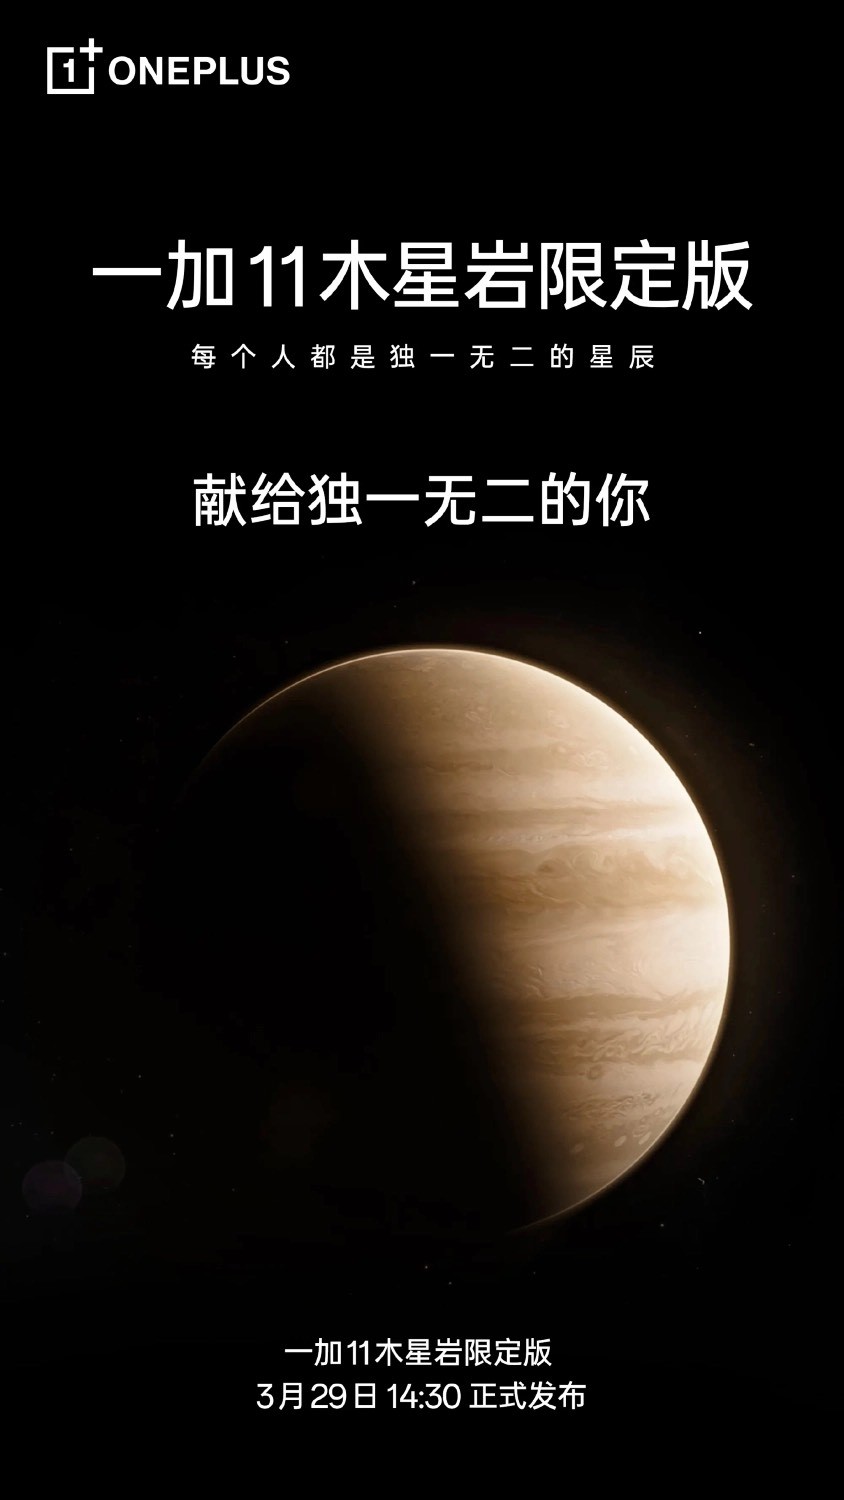 OnePlus 11 5G Jupiter Rock edition